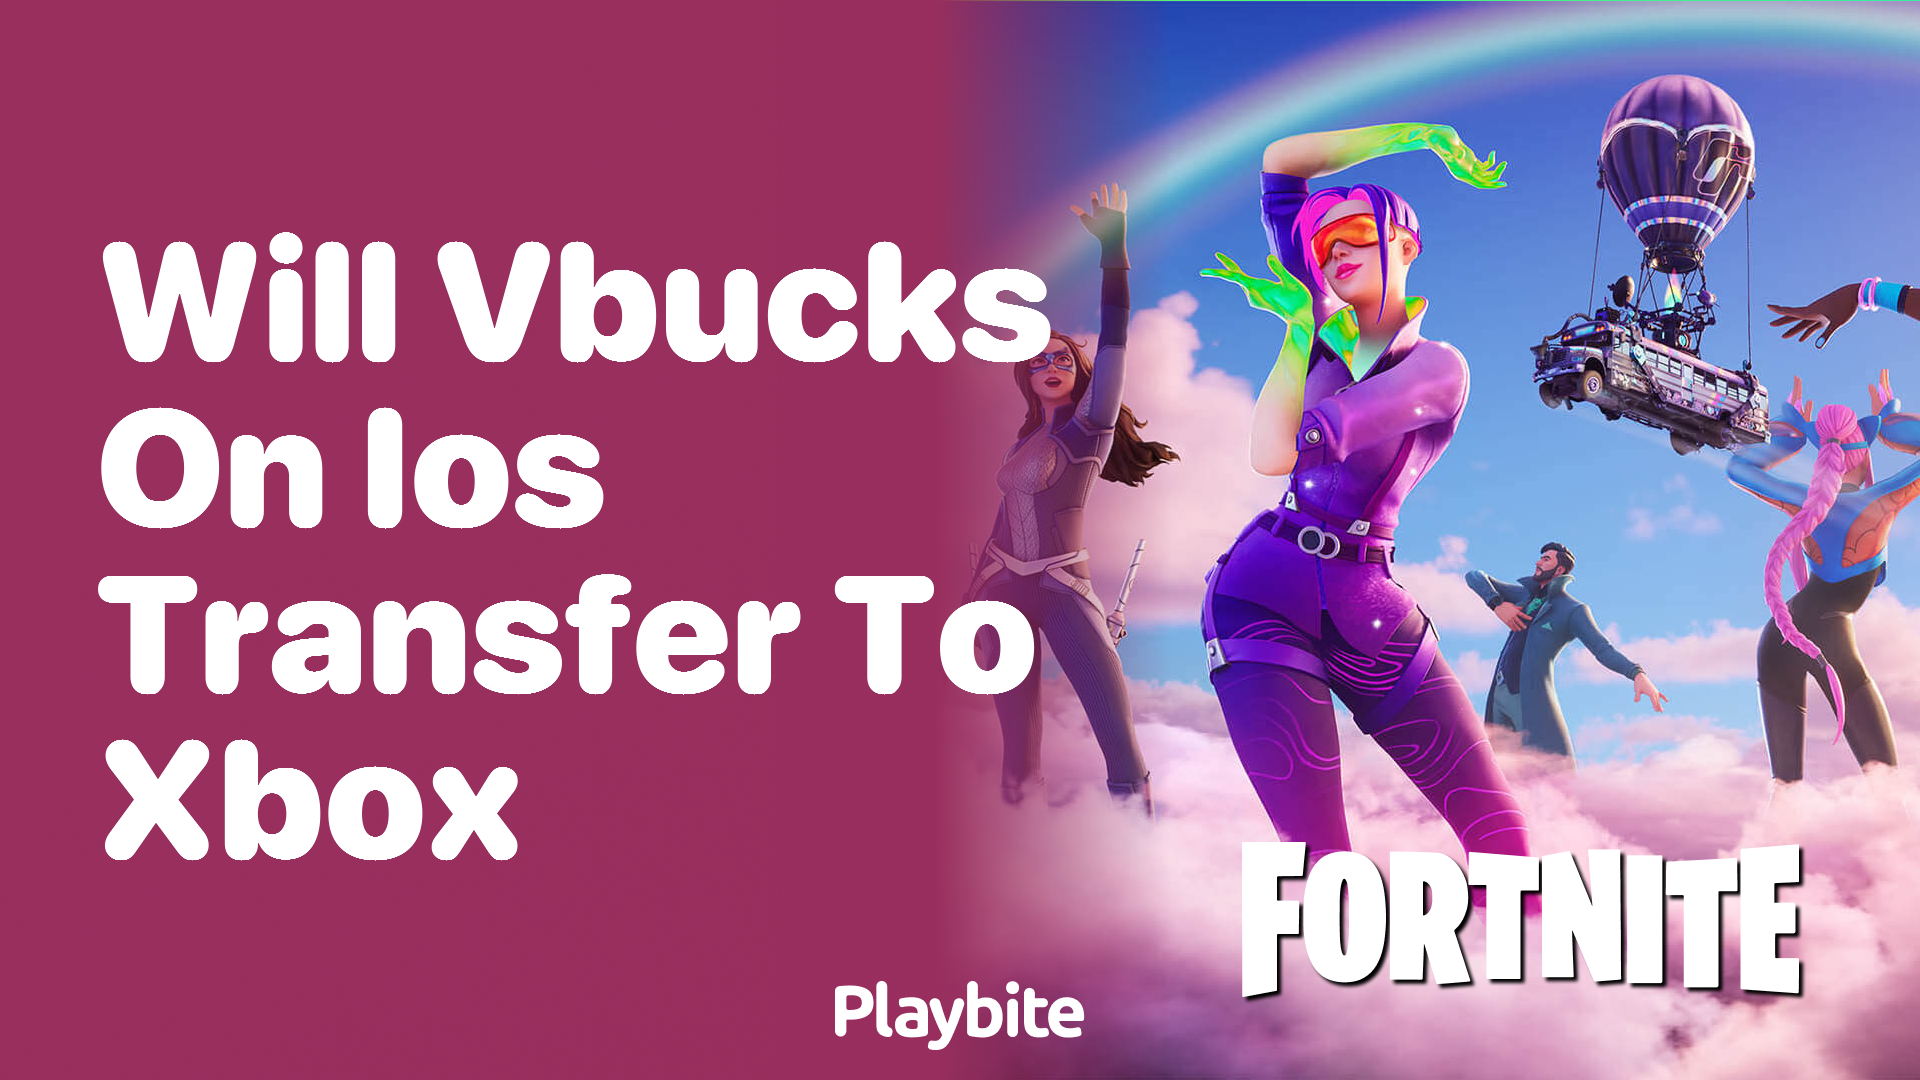 Will V-Bucks on iOS Transfer to Xbox?